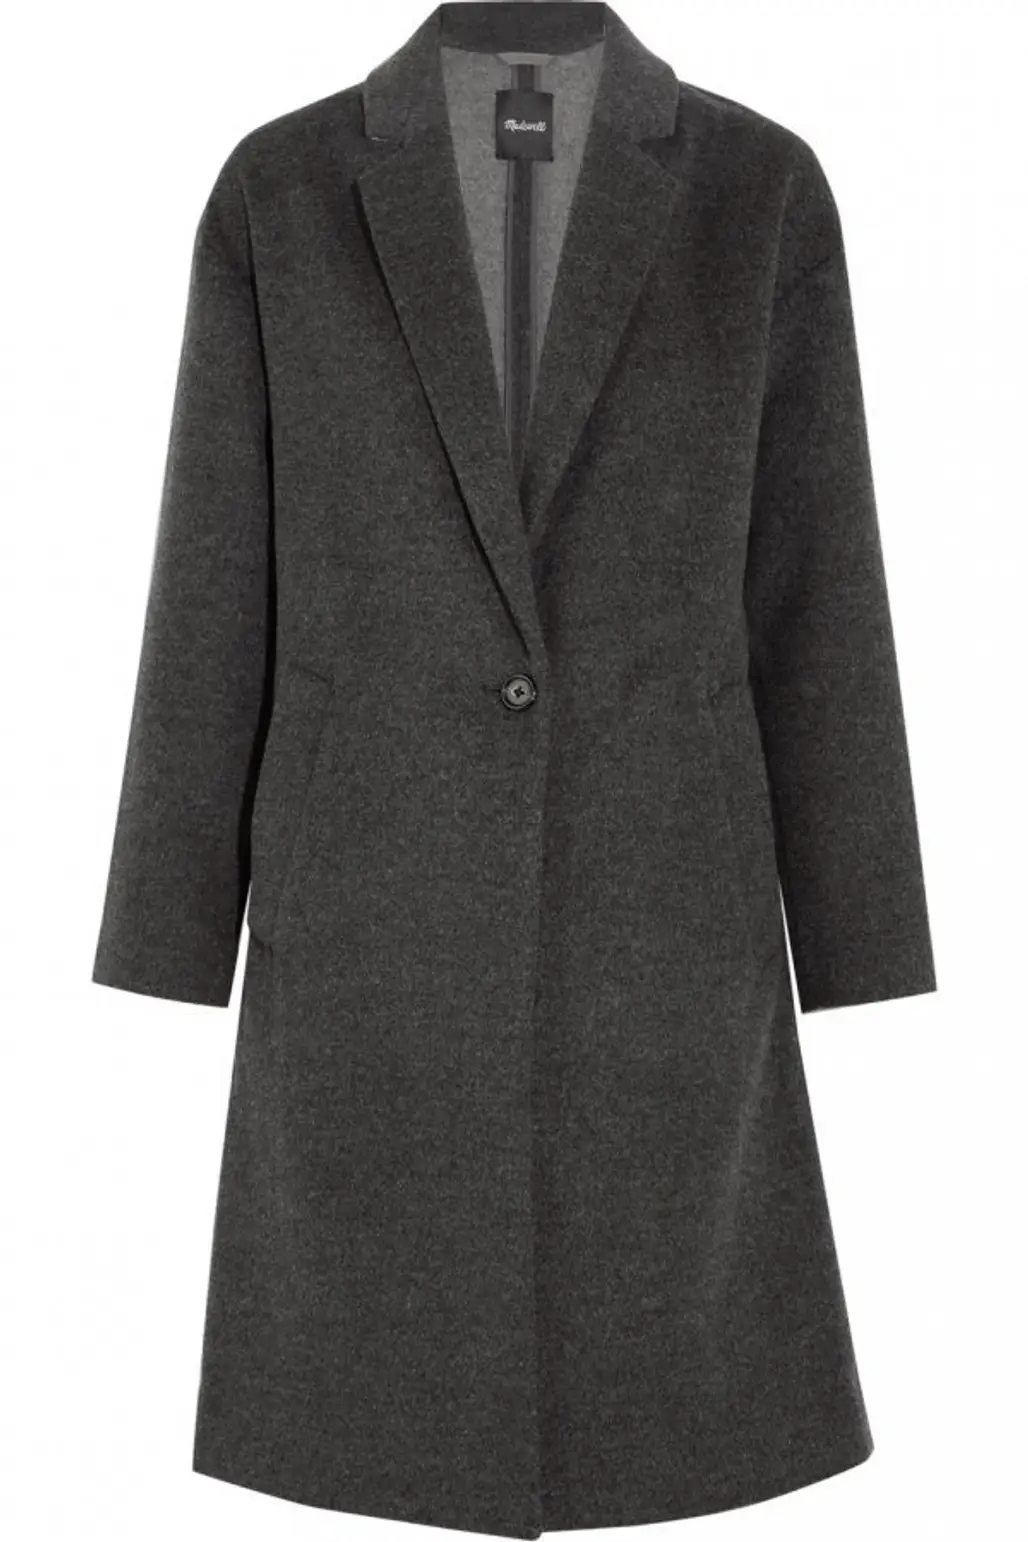 coat, overcoat, formal wear, woolen, day dress,